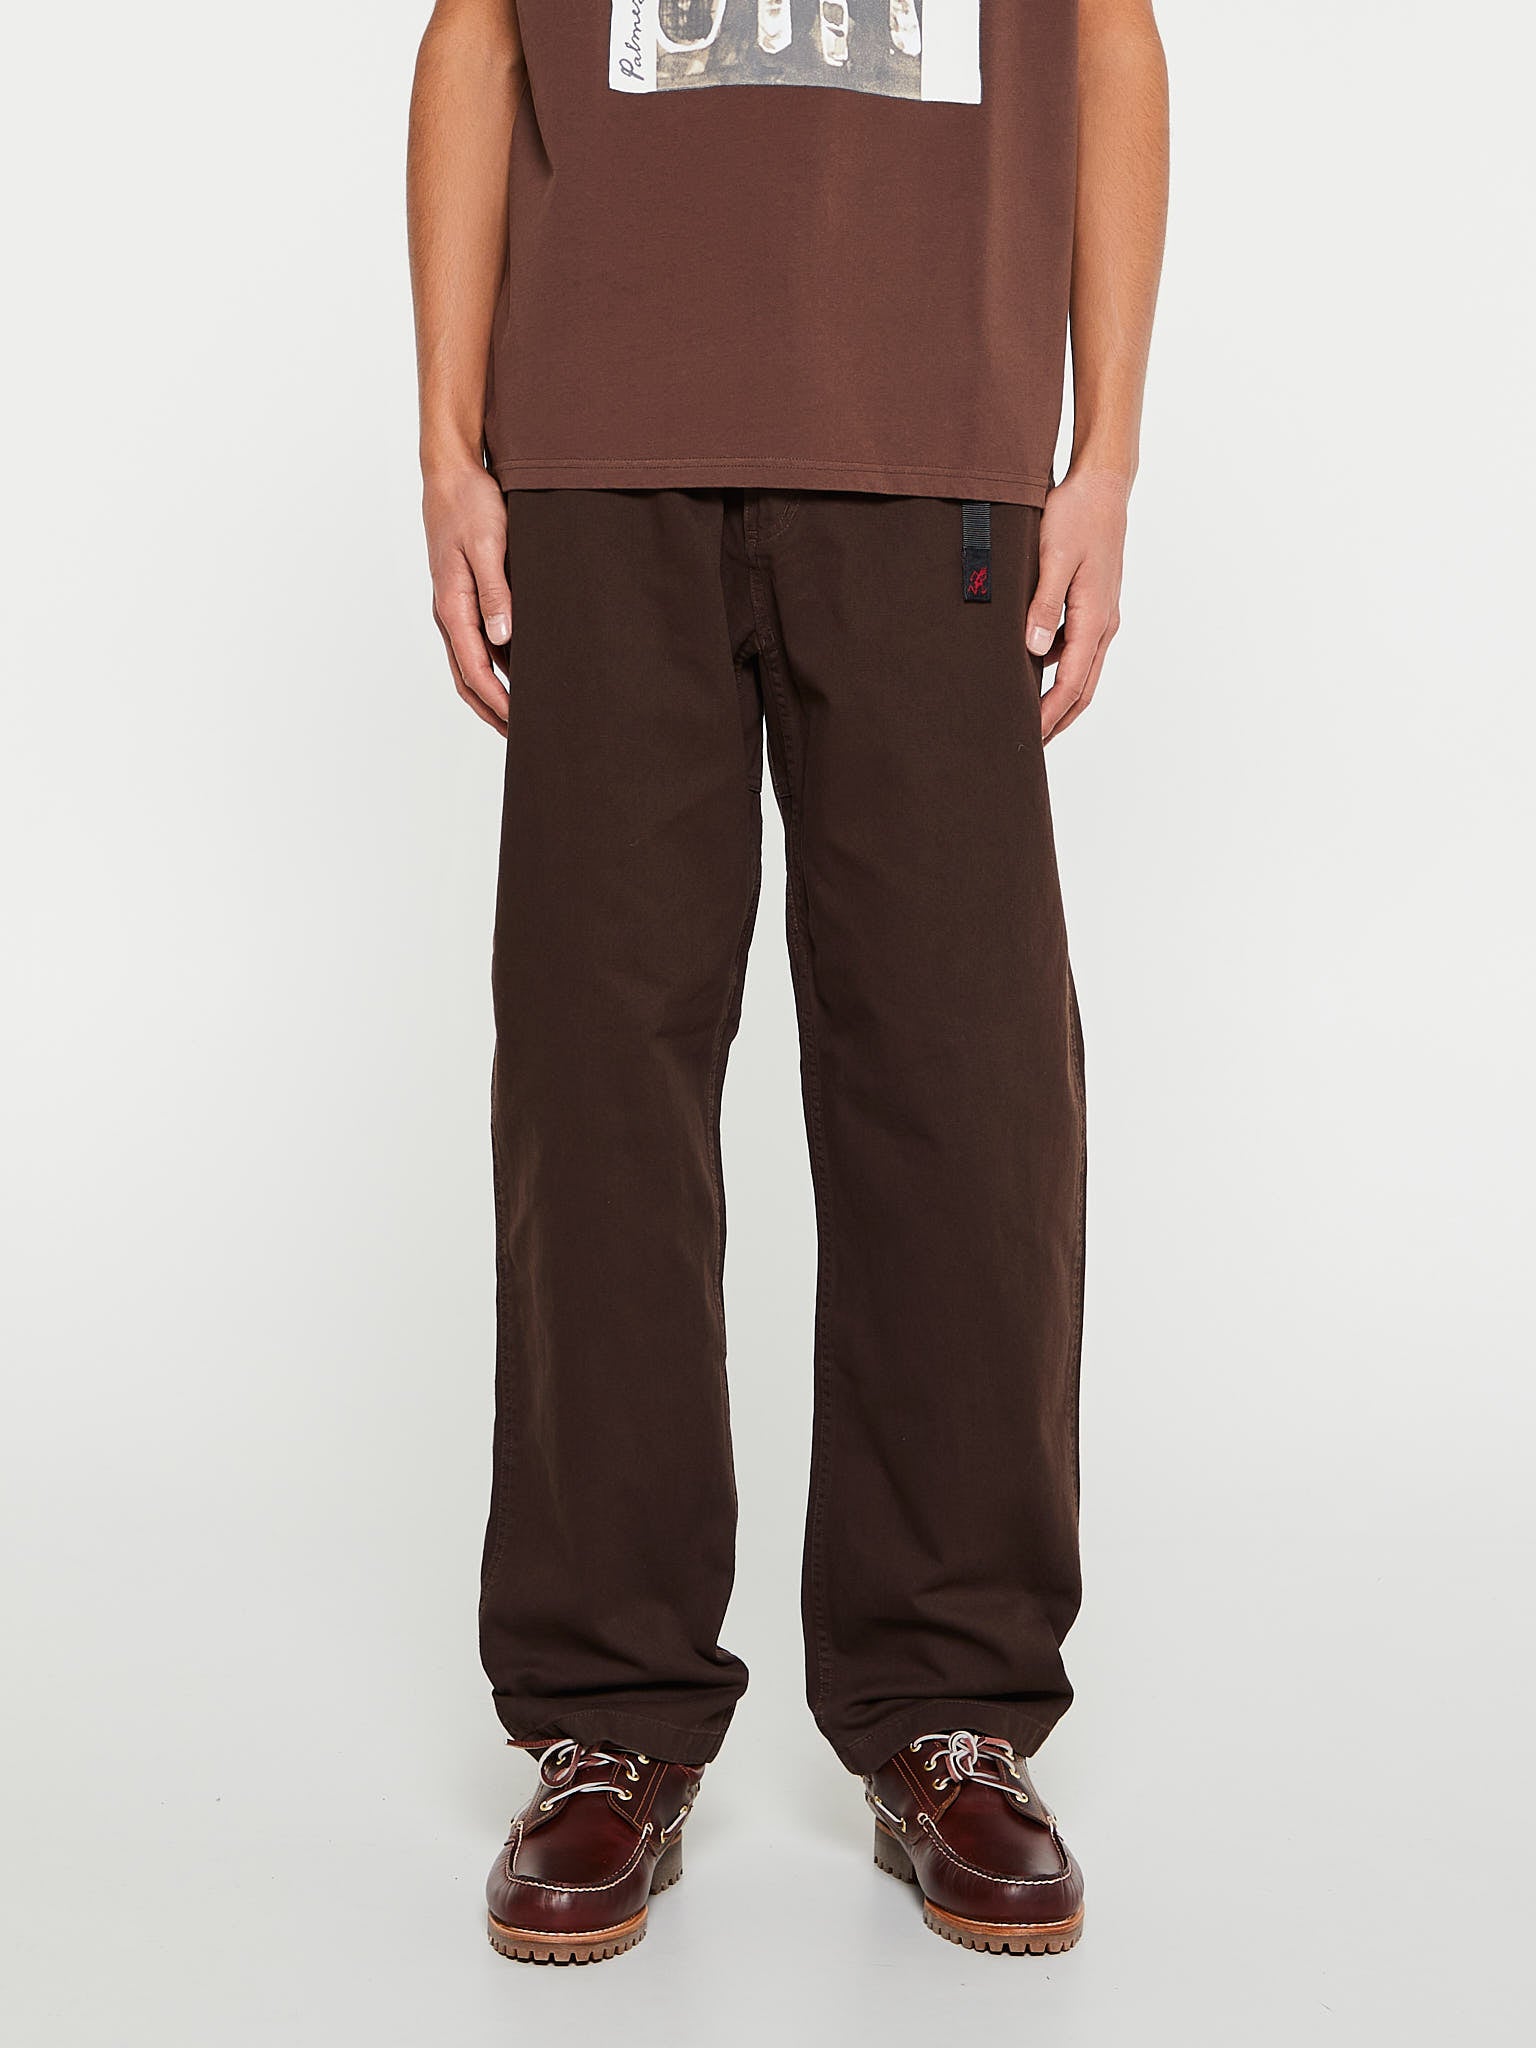 Gramicci - Gramicci Pants in Dark Brown